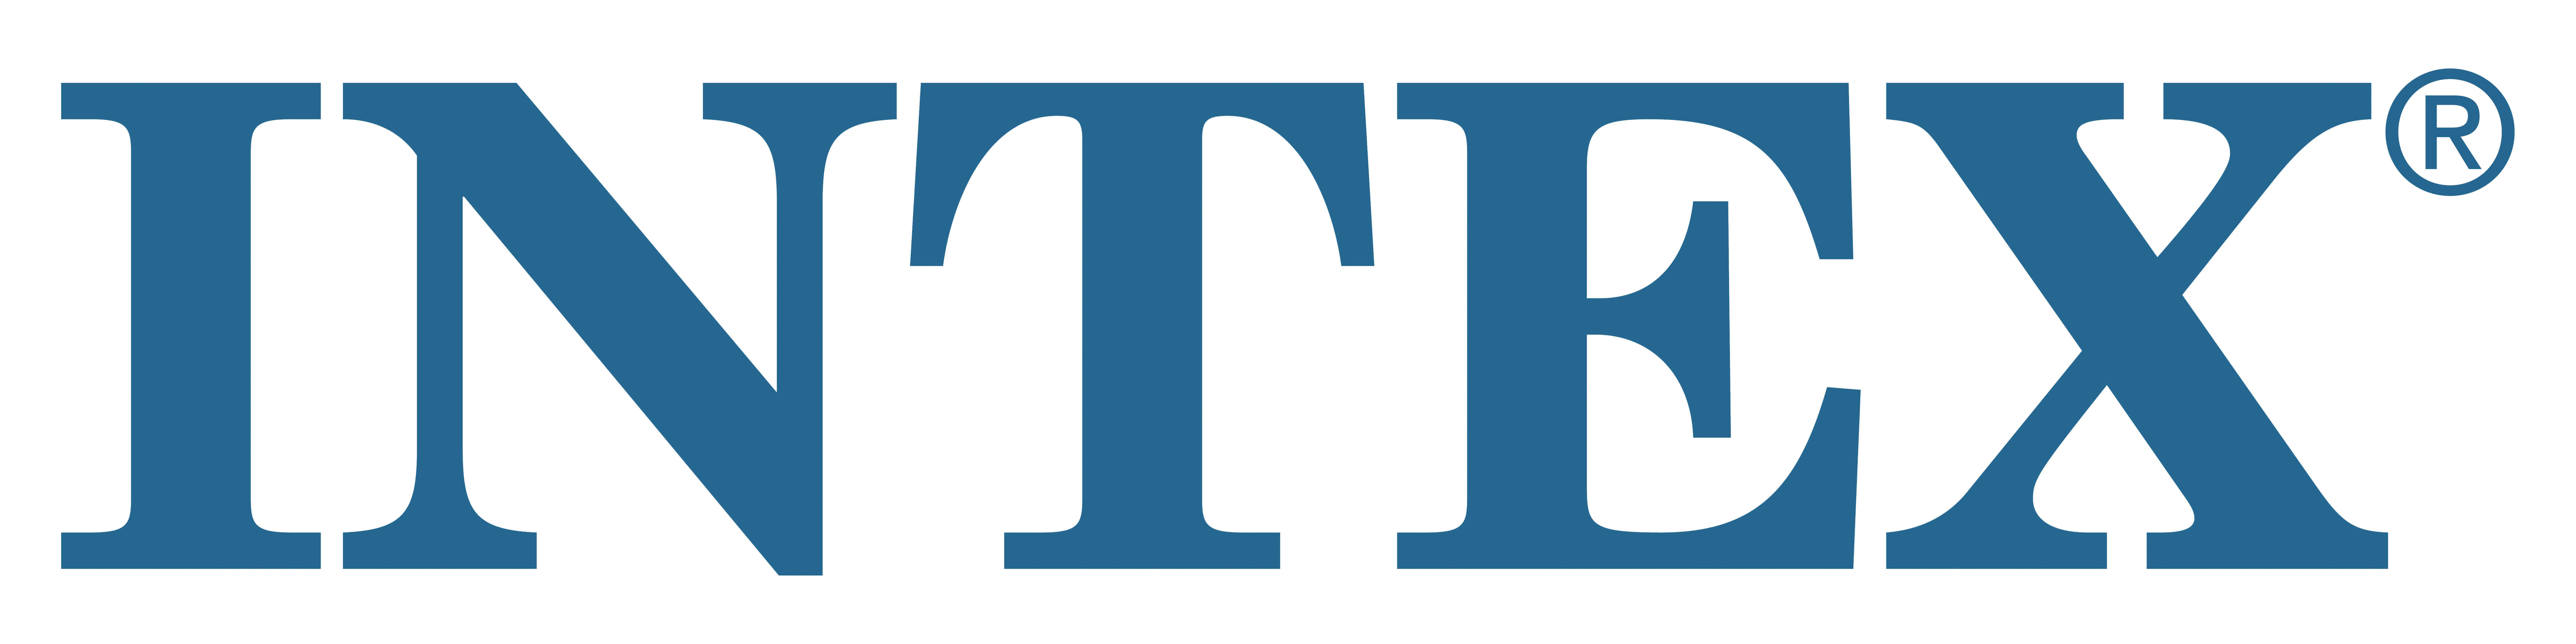 intex-logo